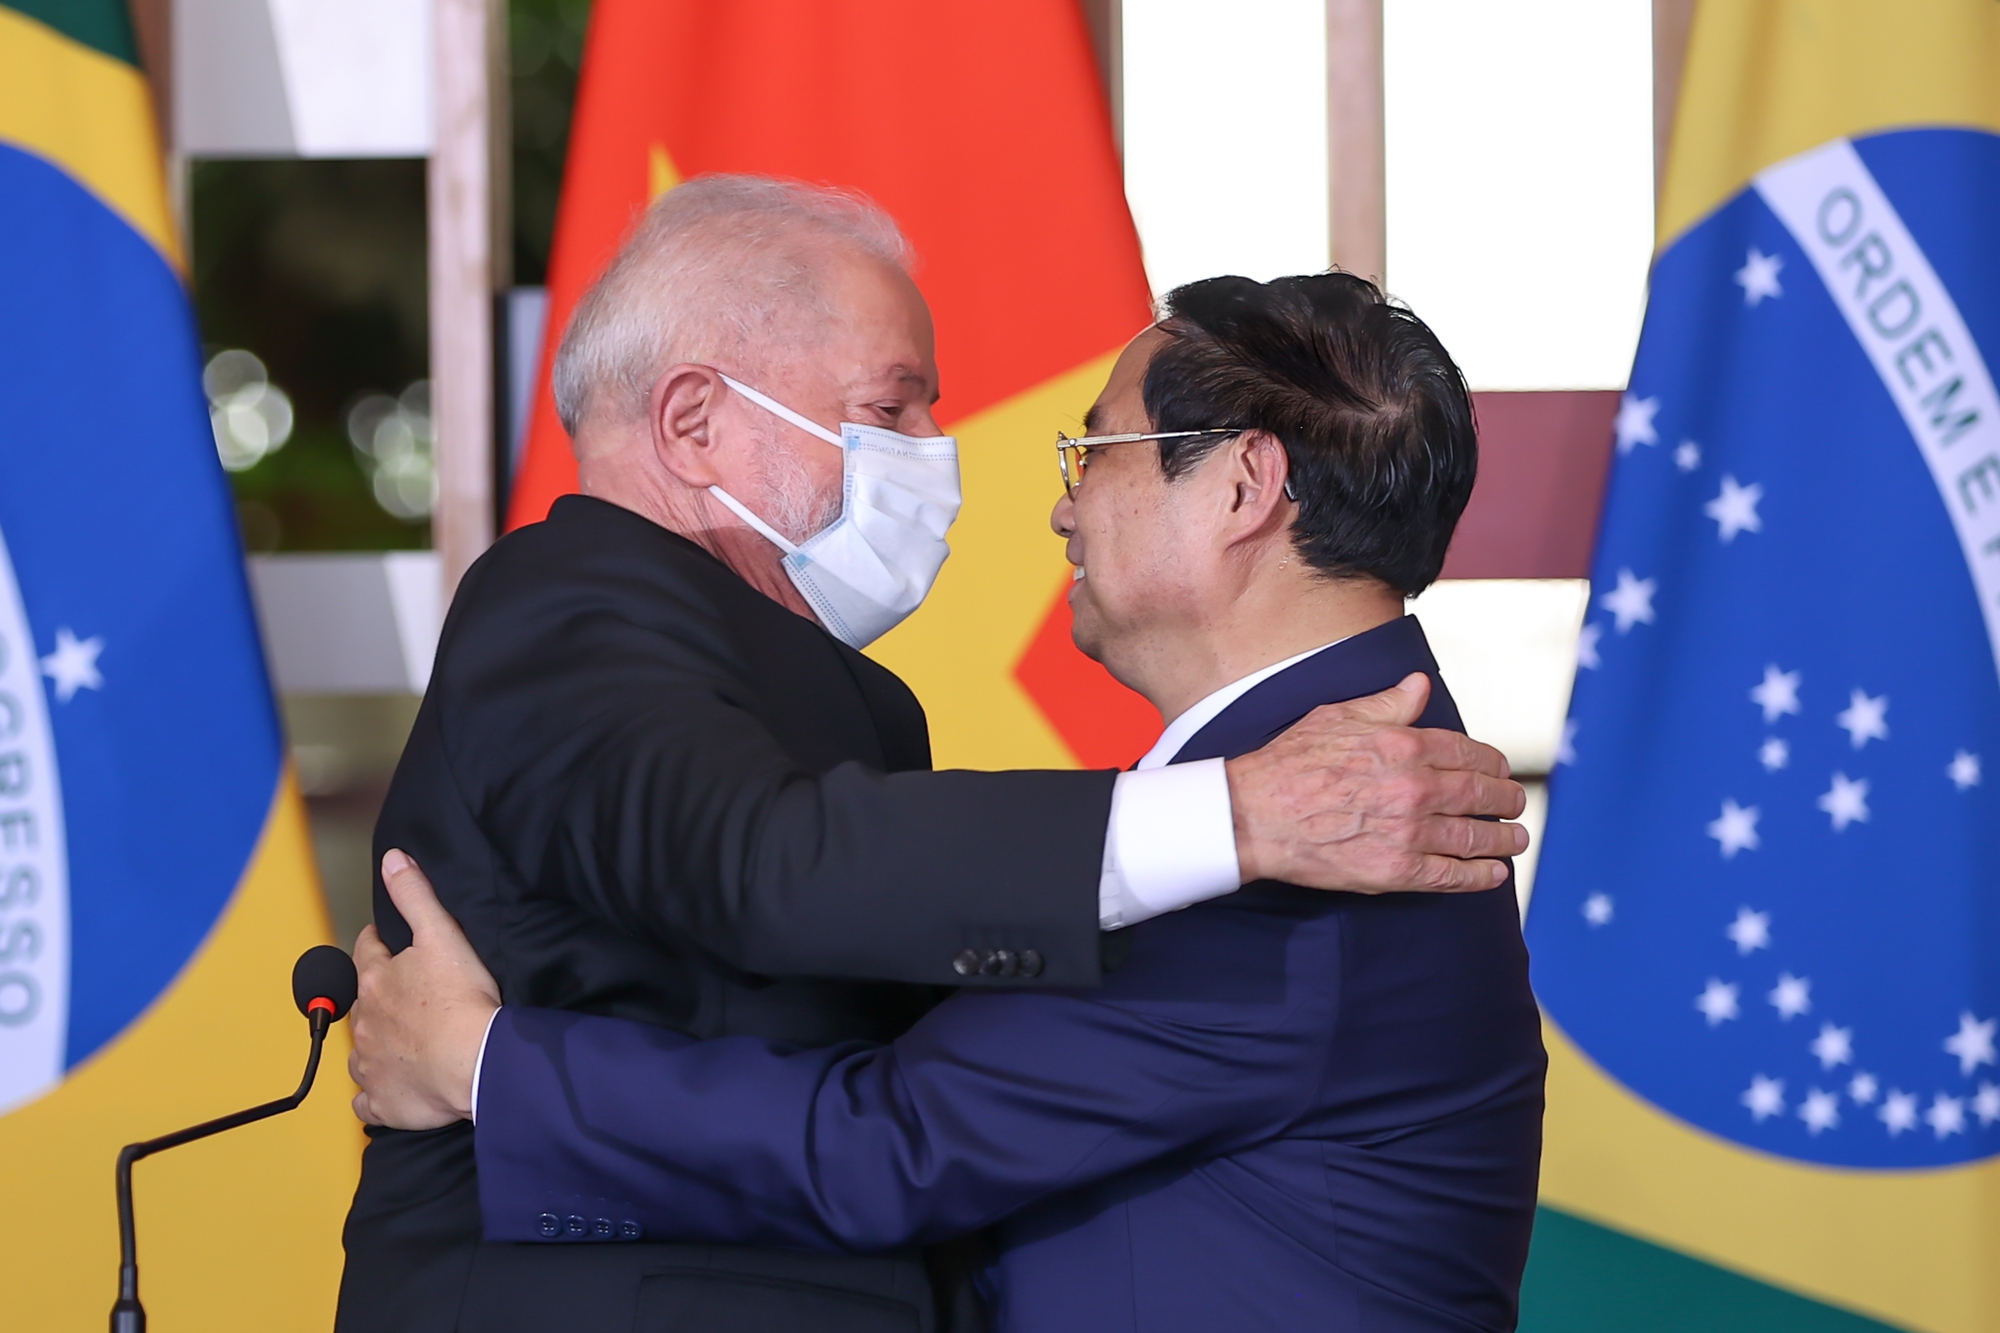 Tổng thống Lula da Silva đã nhận lời mời thăm Việt Nam của lãnh đạo cấp cao Việt Nam nhằm tham gia các hoạt động kỷ niệm 35 năm thiết lập quan hệ ngoại giao Việt Nam - Brazil và tiếp tục làm sâu sắc hơn quan hệ giữa hai nước - Ảnh: VGP/Nhật Bắc